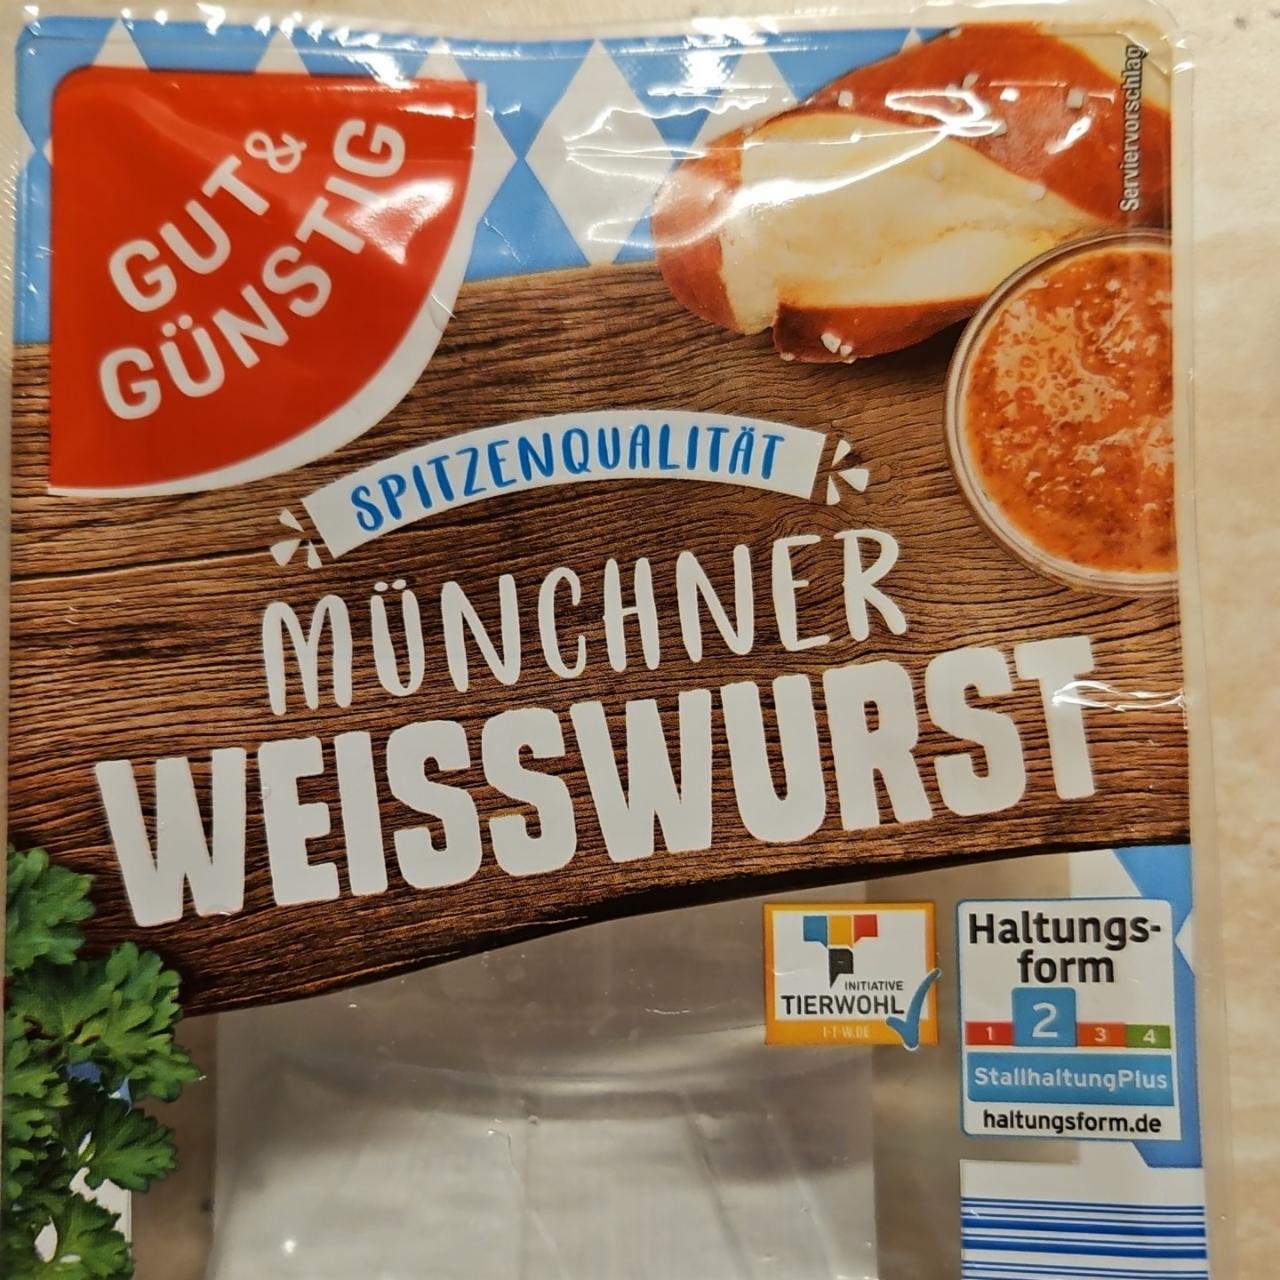 Fotografie - Münchner Weisswurst Gut & Günstig